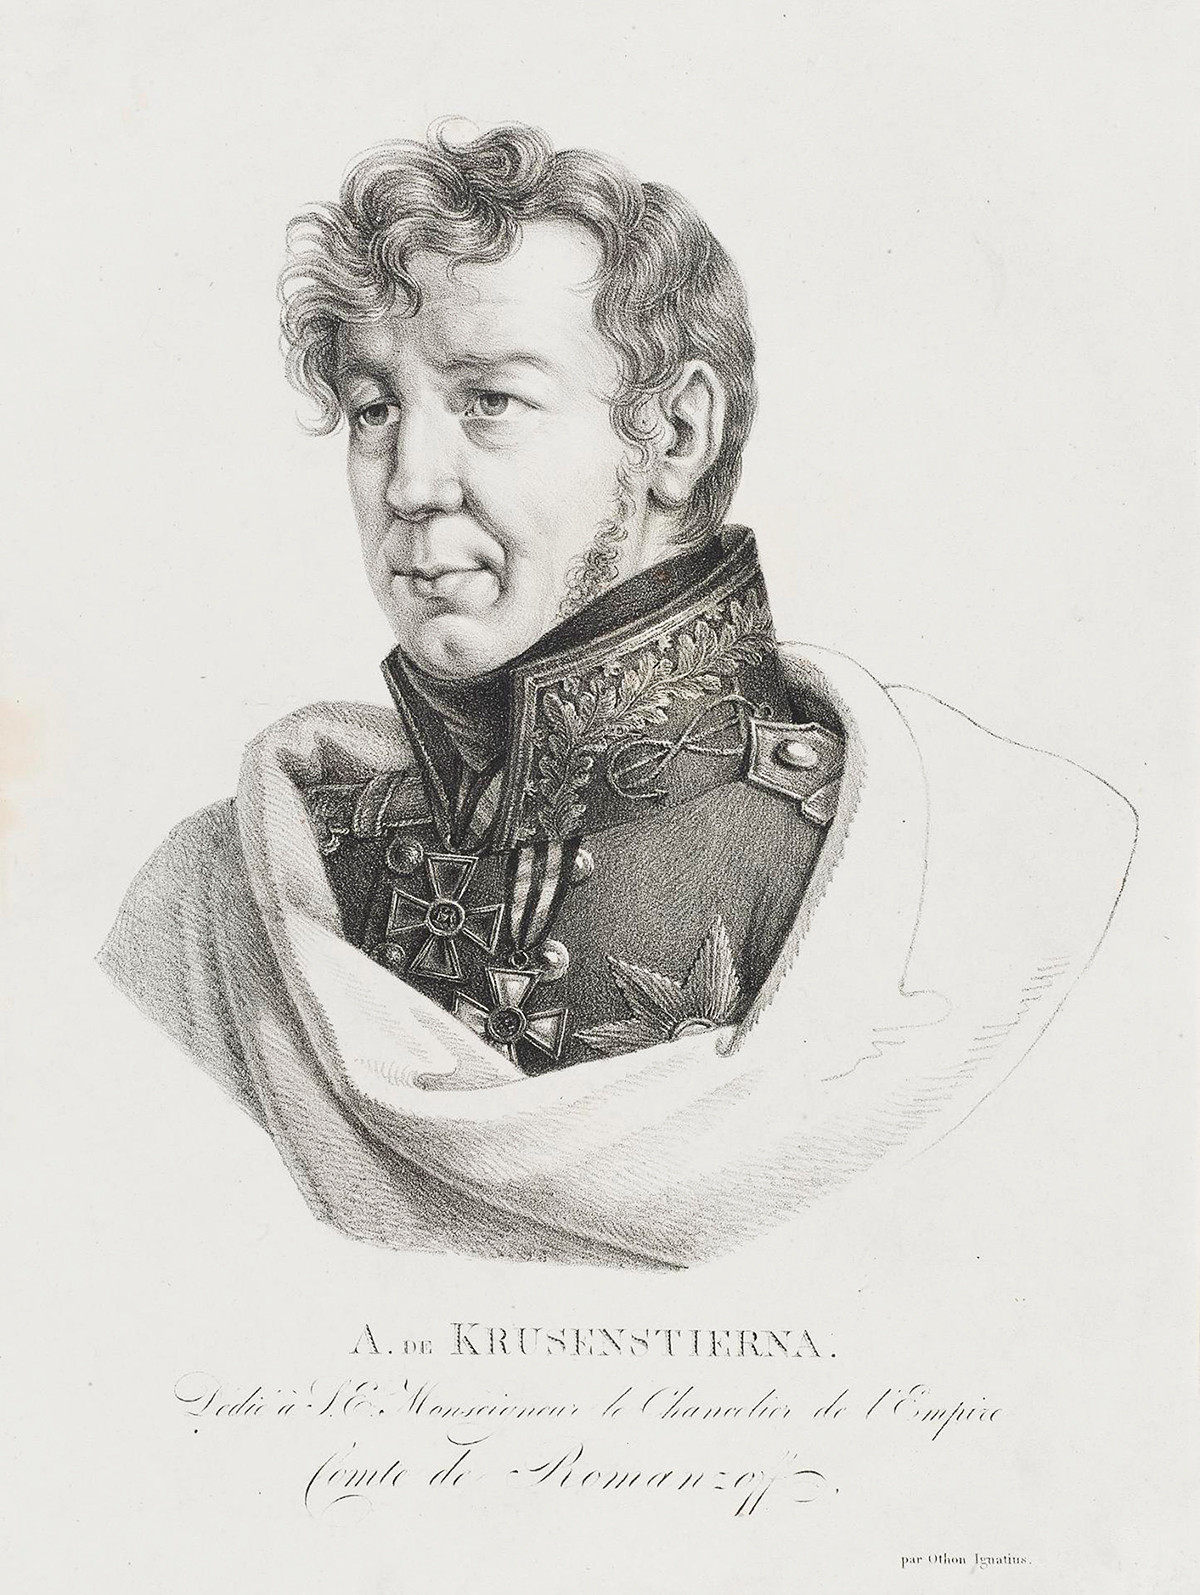 Johann Adam von Krusenstern